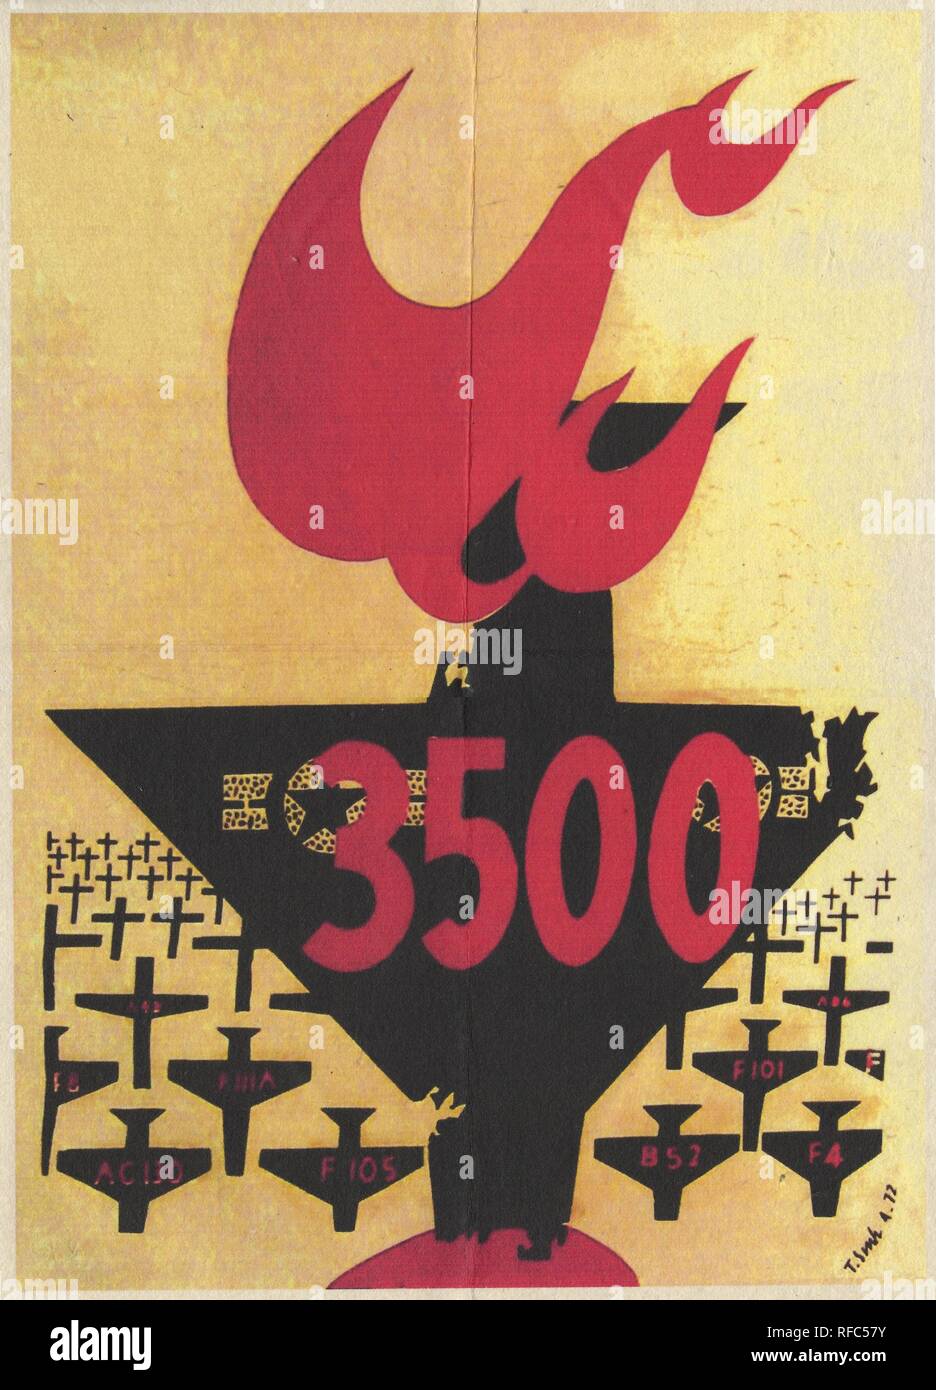 Affiche de propagande vietnamienne du nord, avec un design graphique représentant la silhouette d'un grand avion (centrale, avec les marquages de l'USAF) s'écraser vers le bas avec sa queue en feu, avec les silhouettes des avions plus petits (ceux à l'avant-plan étiqueté par type, ceux à l'arrière-plan dépeints comme des croix), et avec le texte '3500' écrit sur le plan central, probablement célébrer le nombre d'avions américains abattus par l'armée vietnamienne, publié pendant la guerre du Vietnam, Avril, 1972. () Banque D'Images